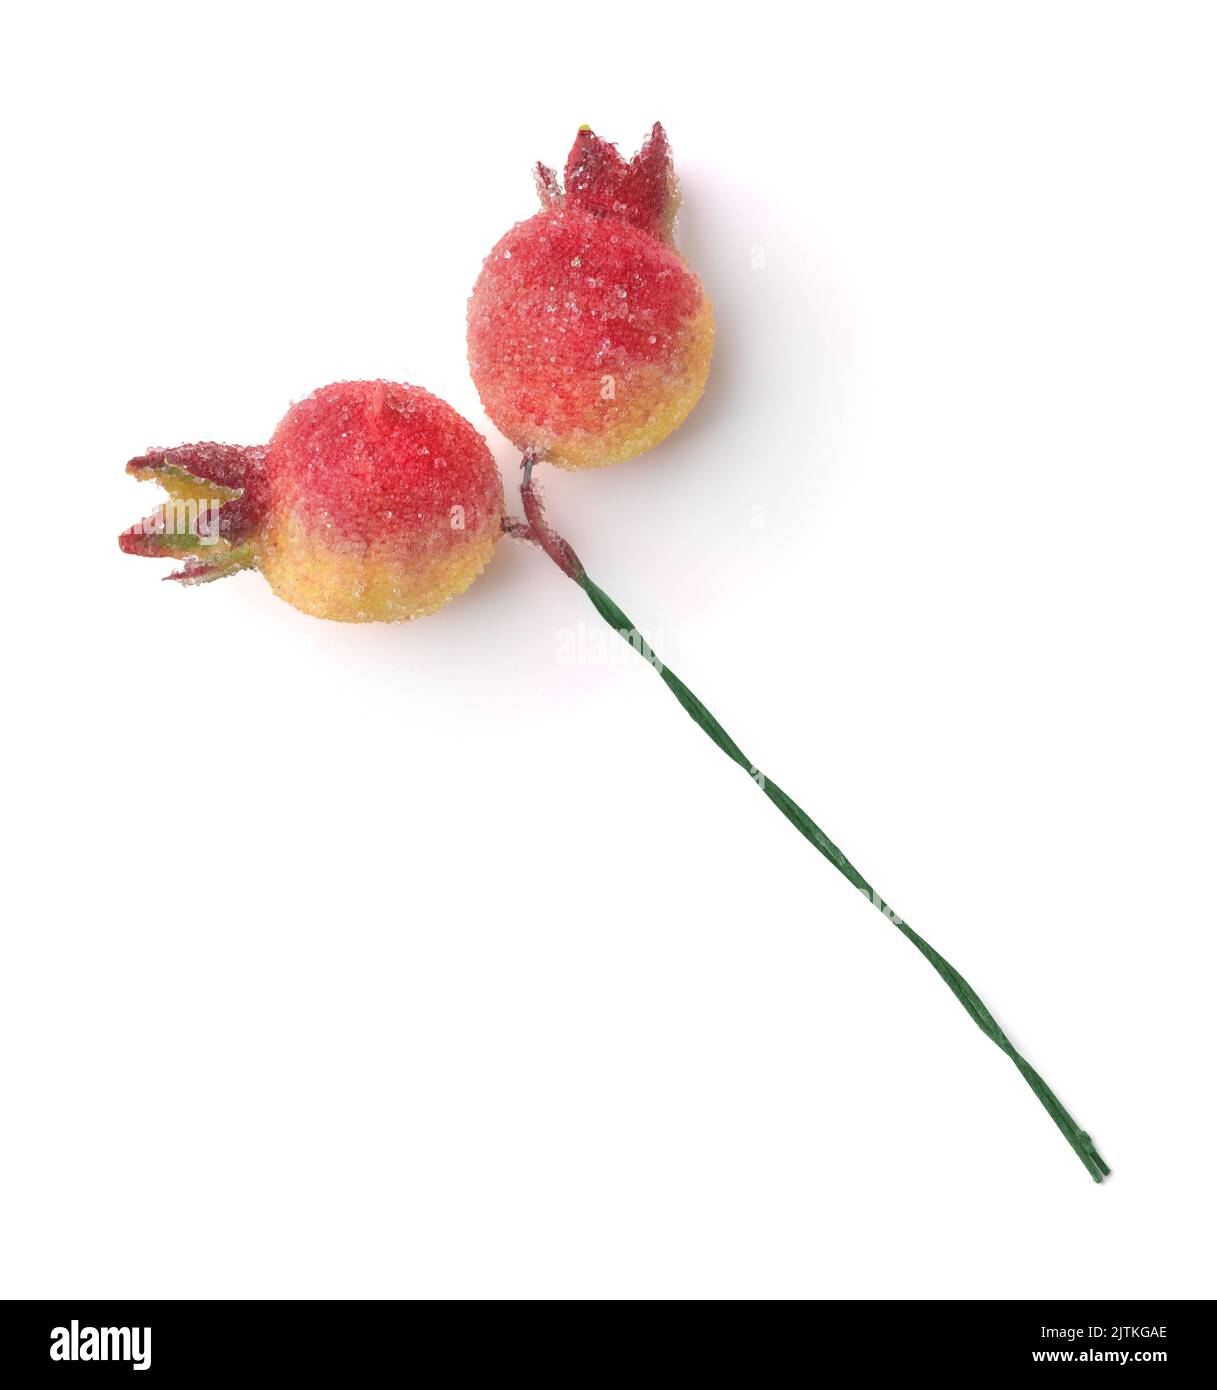 Künstliche Mini Granatapfel Früchte für weihnachtsdekoration isoliert auf weiß Stockfoto